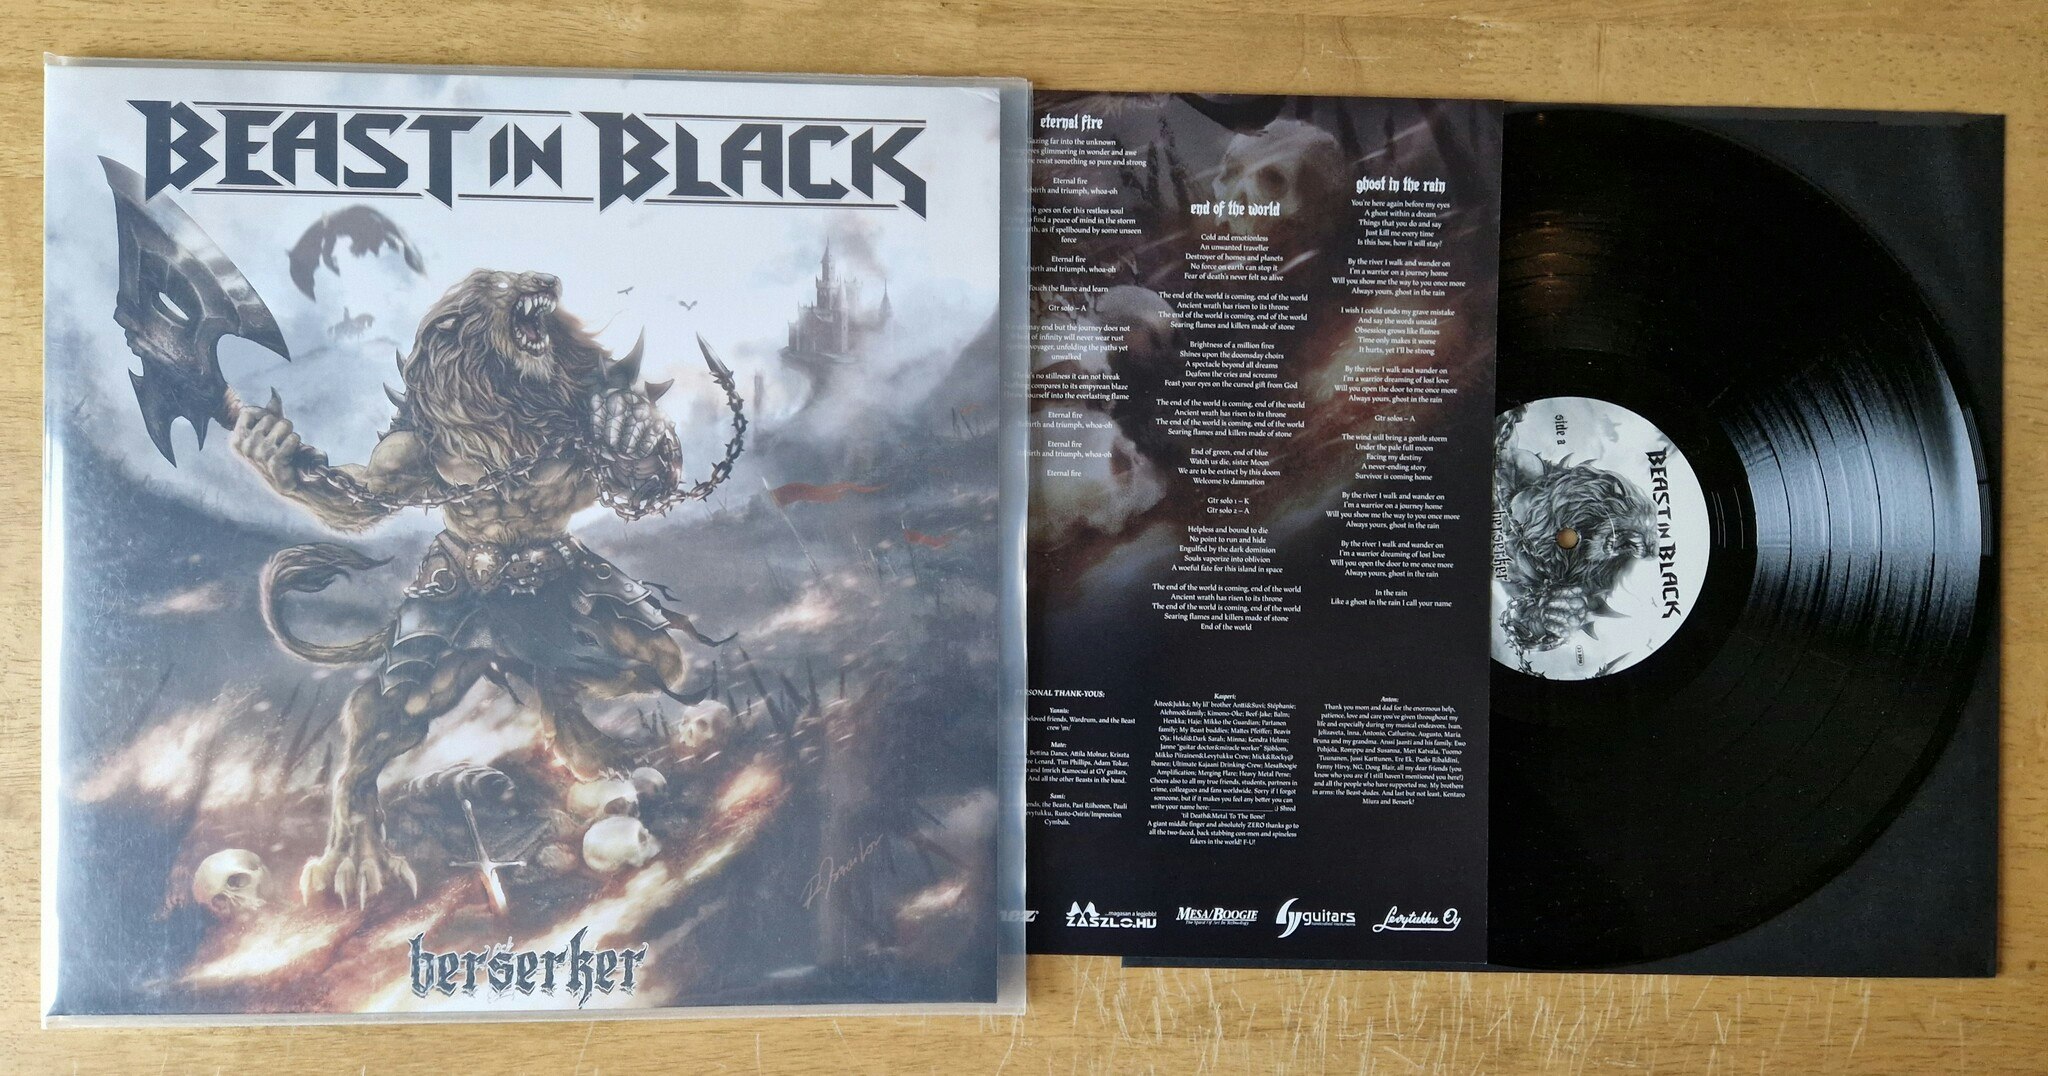 Beast in Black, Berserker. Vinyl LP